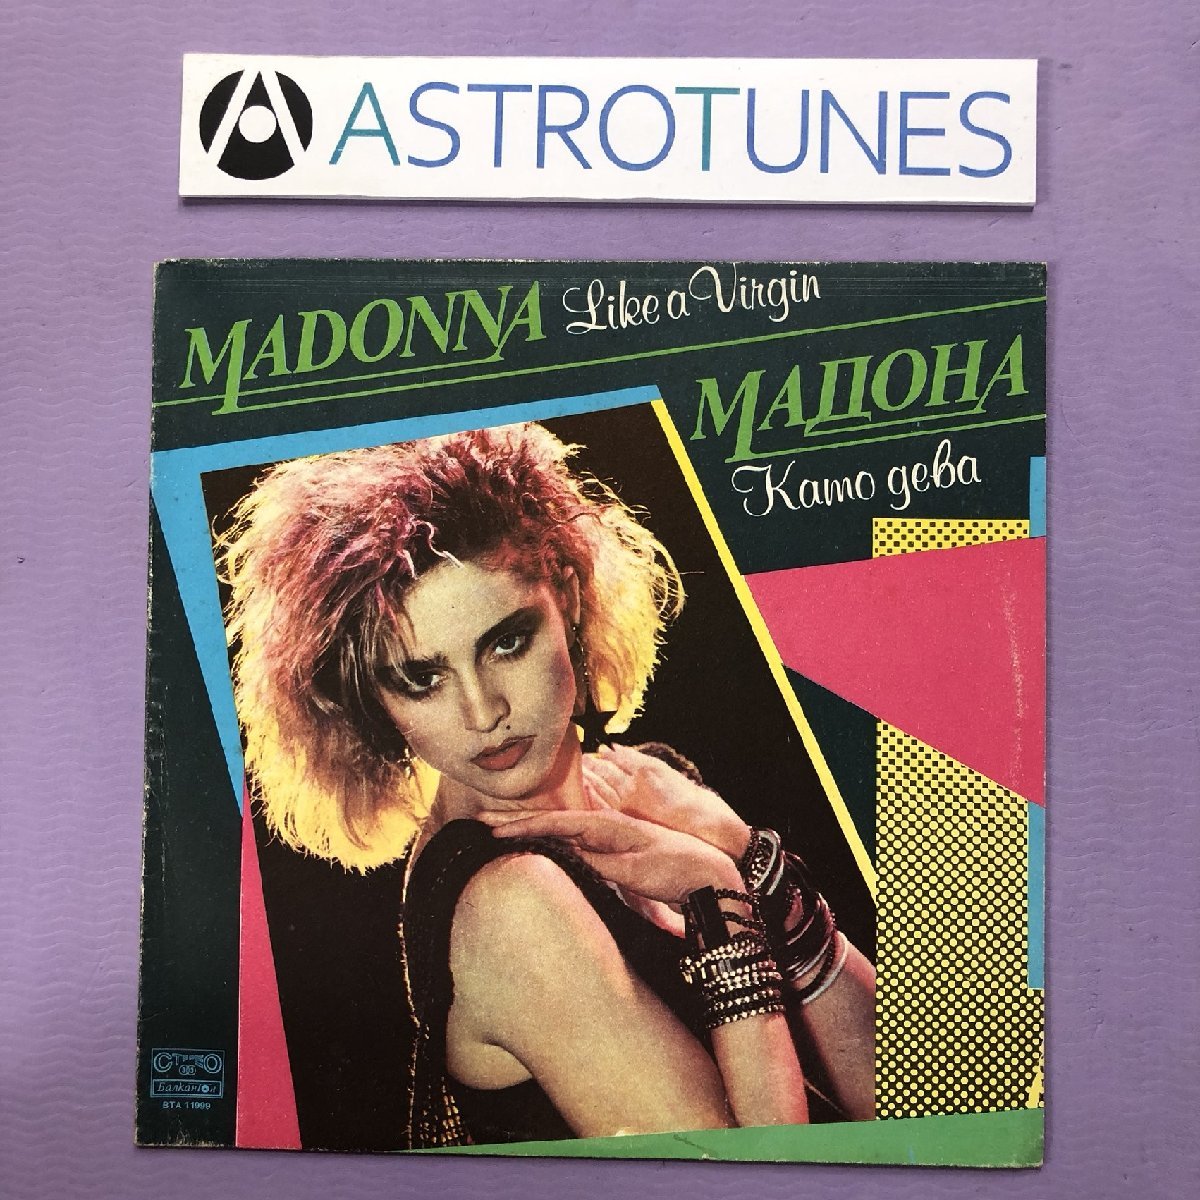 傷なし美盤 1987年 激レアブルガリア盤 マドンナ Madonna LPレコード ライク・ア・ヴァージン Like A Virgin: Material Girl, Dress You Up_画像1